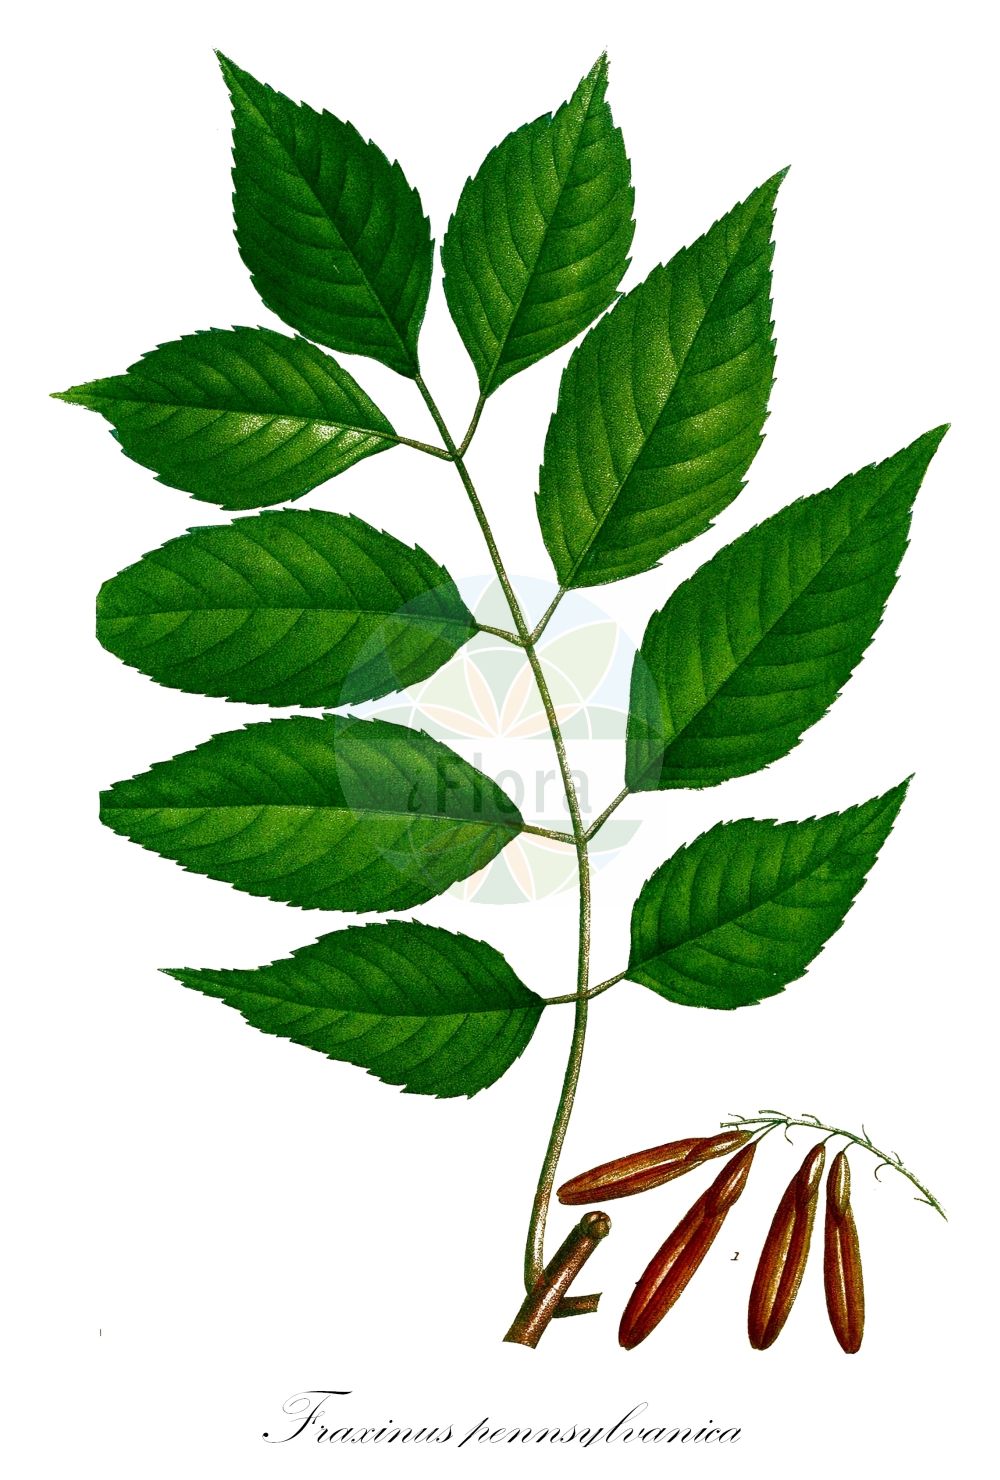 Historische Abbildung von Fraxinus pennsylvanica (Pennsylvanische Esche - Red Ash). Das Bild zeigt Blatt, Bluete, Frucht und Same. ---- Historical Drawing of Fraxinus pennsylvanica (Pennsylvanische Esche - Red Ash). The image is showing leaf, flower, fruit and seed.(Fraxinus pennsylvanica,Pennsylvanische Esche,Red Ash,Calycomelia campestris,Calycomelia elliptica,Calycomelia expansa,Calycomelia lancea,Calycomelia lanceolata,Calycomelia ovata,Calycomelia pennsylvanica,Calycomelia pubescens,Calycomelia richardii,Fraxinus arbutifolia,Fraxinus aucubifolia,Fraxinus campestris,Fraxinus cerasifolia,Fraxinus cinerea,Fraxinus concolor,Fraxinus darlingtonii,Fraxinus elliptica,Fraxinus expansa,Fraxinus fusca,Fraxinus glabra,Fraxinus lancea,Fraxinus lanceolata,Fraxinus lancifolia,Fraxinus longifolia,Fraxinus media,Fraxinus oblongocarpa,Fraxinus ovalis,Fraxinus ovata,Fraxinus pennsylvanica,Fraxinus platyphylla,Fraxinus pubescens,Fraxinus richardii,Fraxinus rubicunda,Fraxinus rufa,Fraxinus smallii,Fraxinus subvillosa,Fraxinus tomentosa,Fraxinus trialata,Fraxinus viridis,Leptalix cinerea,Leptalix elliptica,Leptalix expansa,Leptalix fusca,Leptalix lancifolia,Leptalix longifolia,Leptalix media,Leptalix ovata,Leptalix pubescens,Leptalix richardii,Leptalix rubicunda,Leptalix rufa,Pennsylvanische Esche,Gruen-Esche,Rot-Esche,Red Ash,Arizona Ash,Blue Ash,River Ash,Swamp Ash,Water Ash,Green Ash,Fraxinus,Esche,Ash,Oleaceae,Ölbaumgewächse,Olive family,Blatt,Bluete,Frucht,Same,leaf,flower,fruit,seed,Michaux (1817-1819))